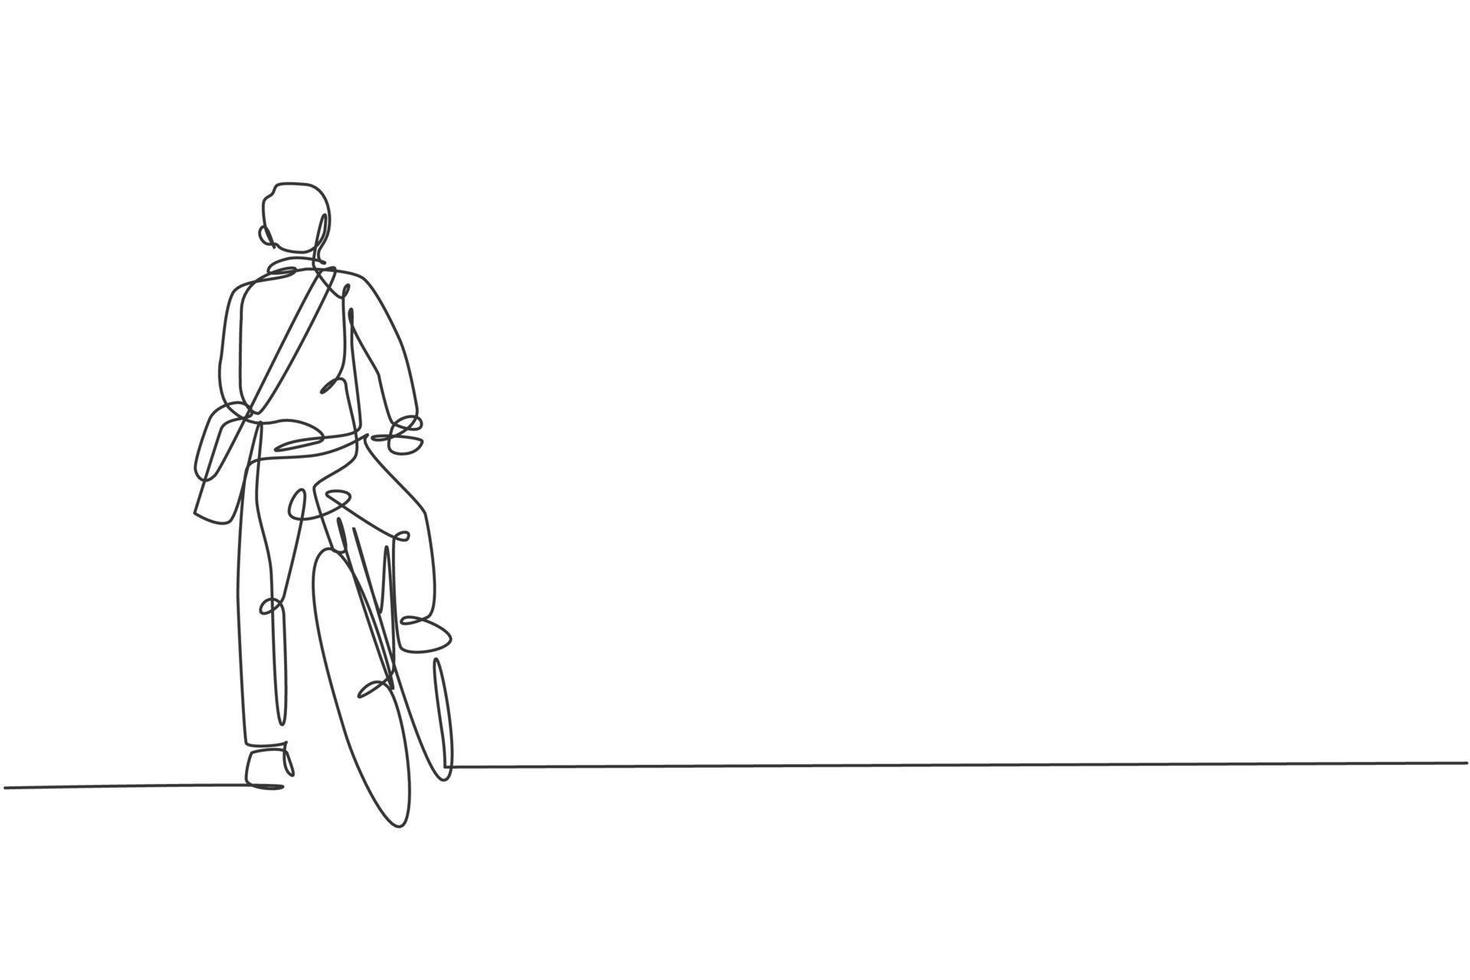 único desenho de linha contínua do jovem gerente profissional andando de bicicleta para o escritório, vista traseira. bicicleta para o trabalho, conceito de transporte ecológico. ilustração em vetor design de desenho de uma linha na moda